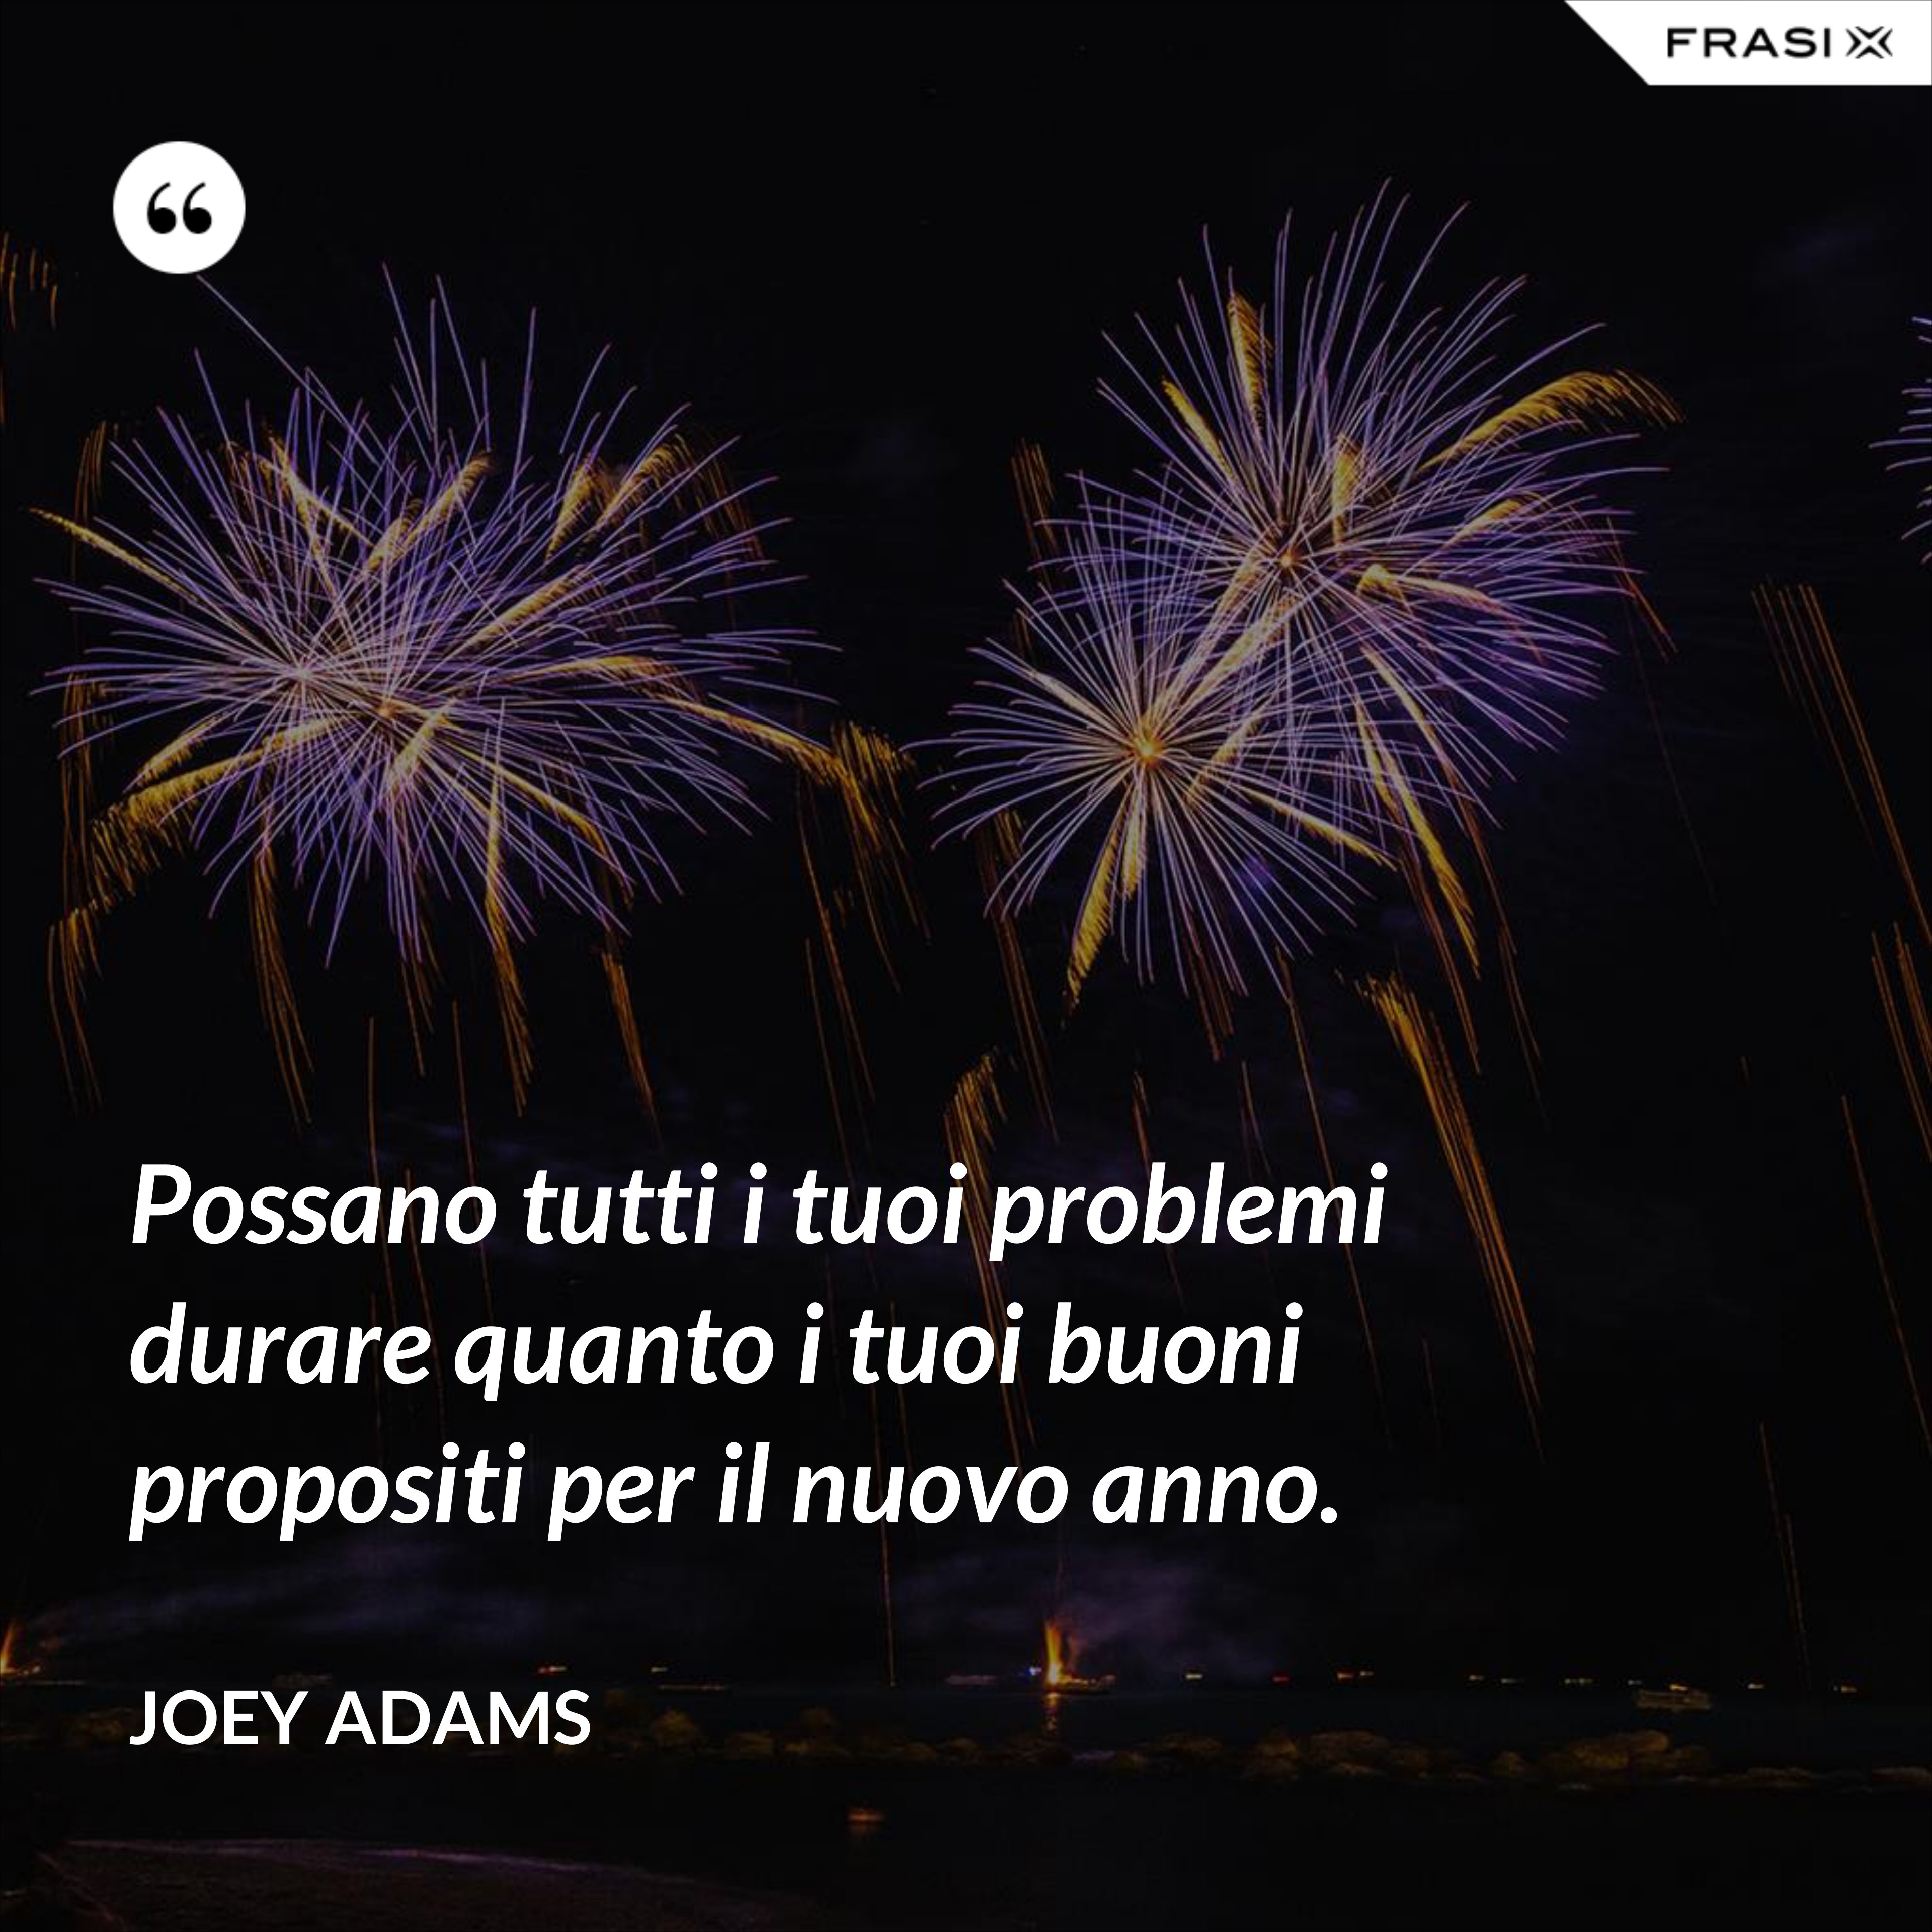 Possano tutti i tuoi problemi durare quanto i tuoi buoni propositi per il nuovo anno. - Joey Adams